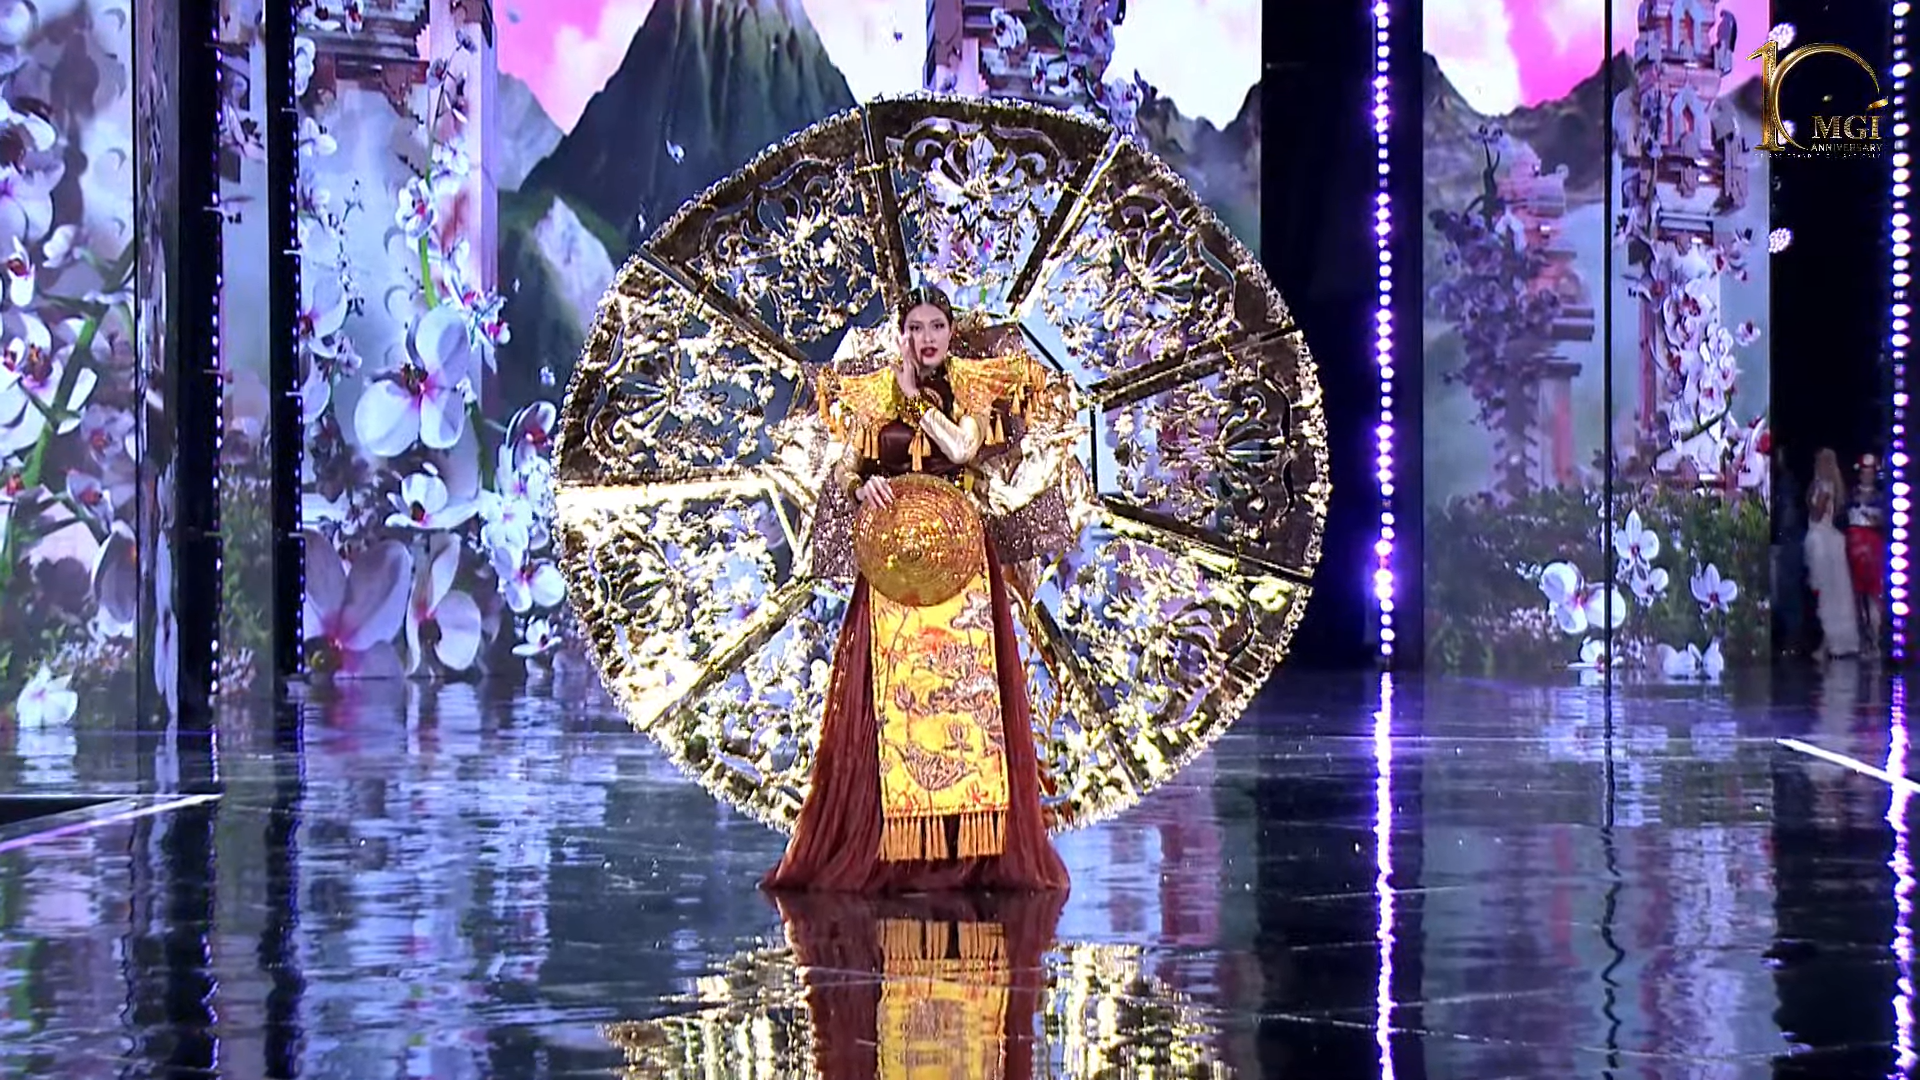 Đoàn Thiên Ân gặp sự cố khi trình diễn trang phục dân tộc nặng 14kg tại Miss Grand International 2022 - Ảnh 3.